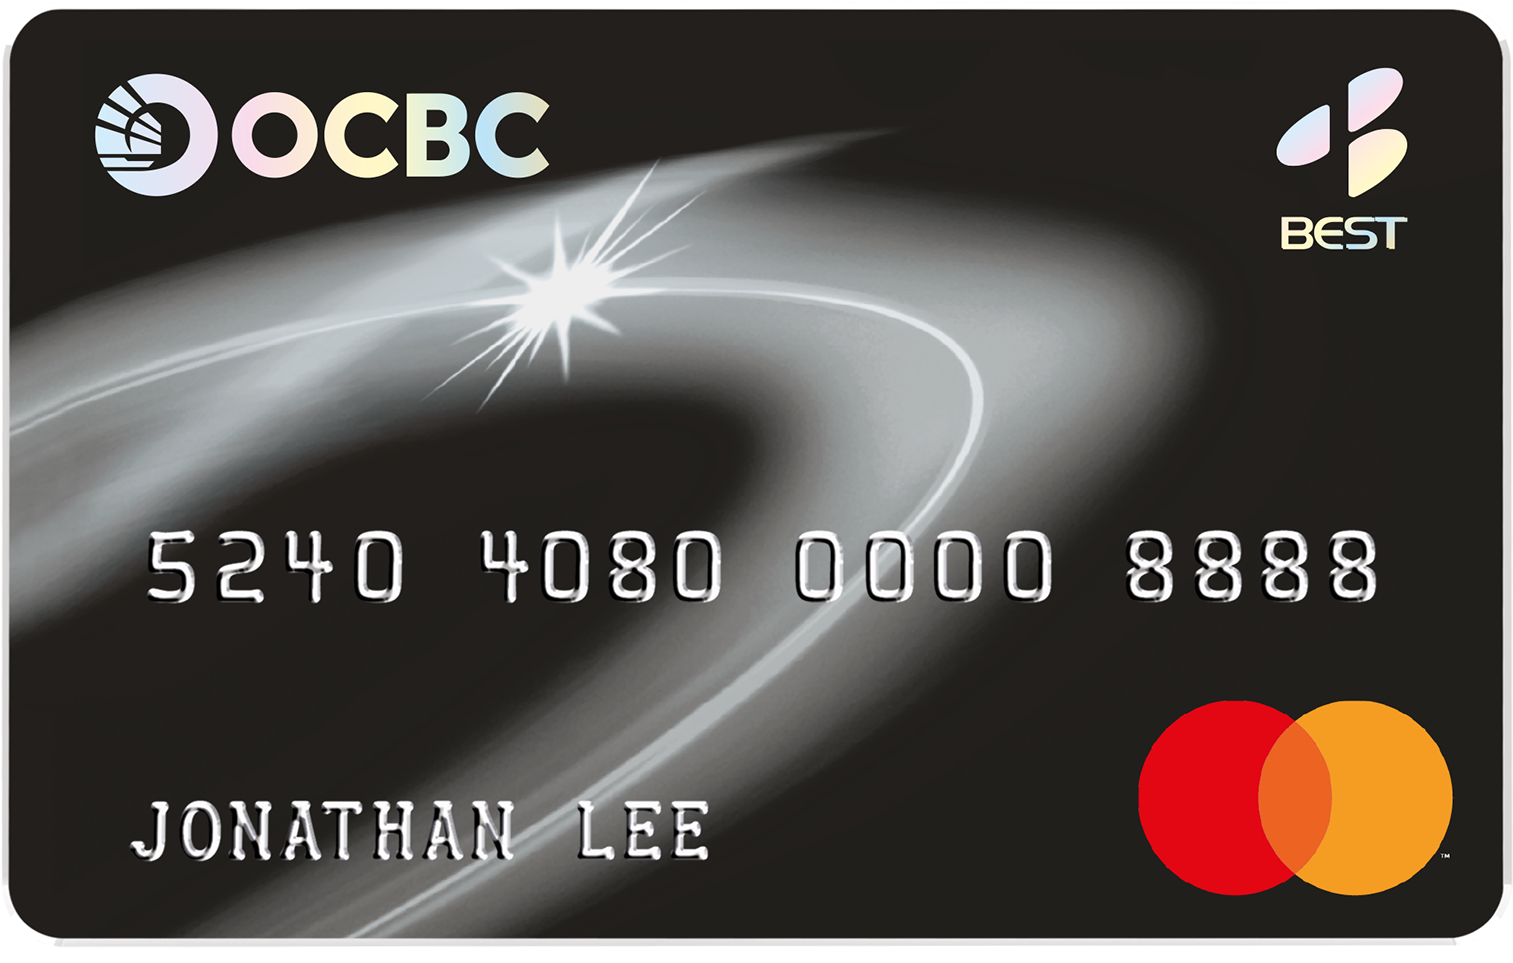 BEST OCBC Platinum Credit Card